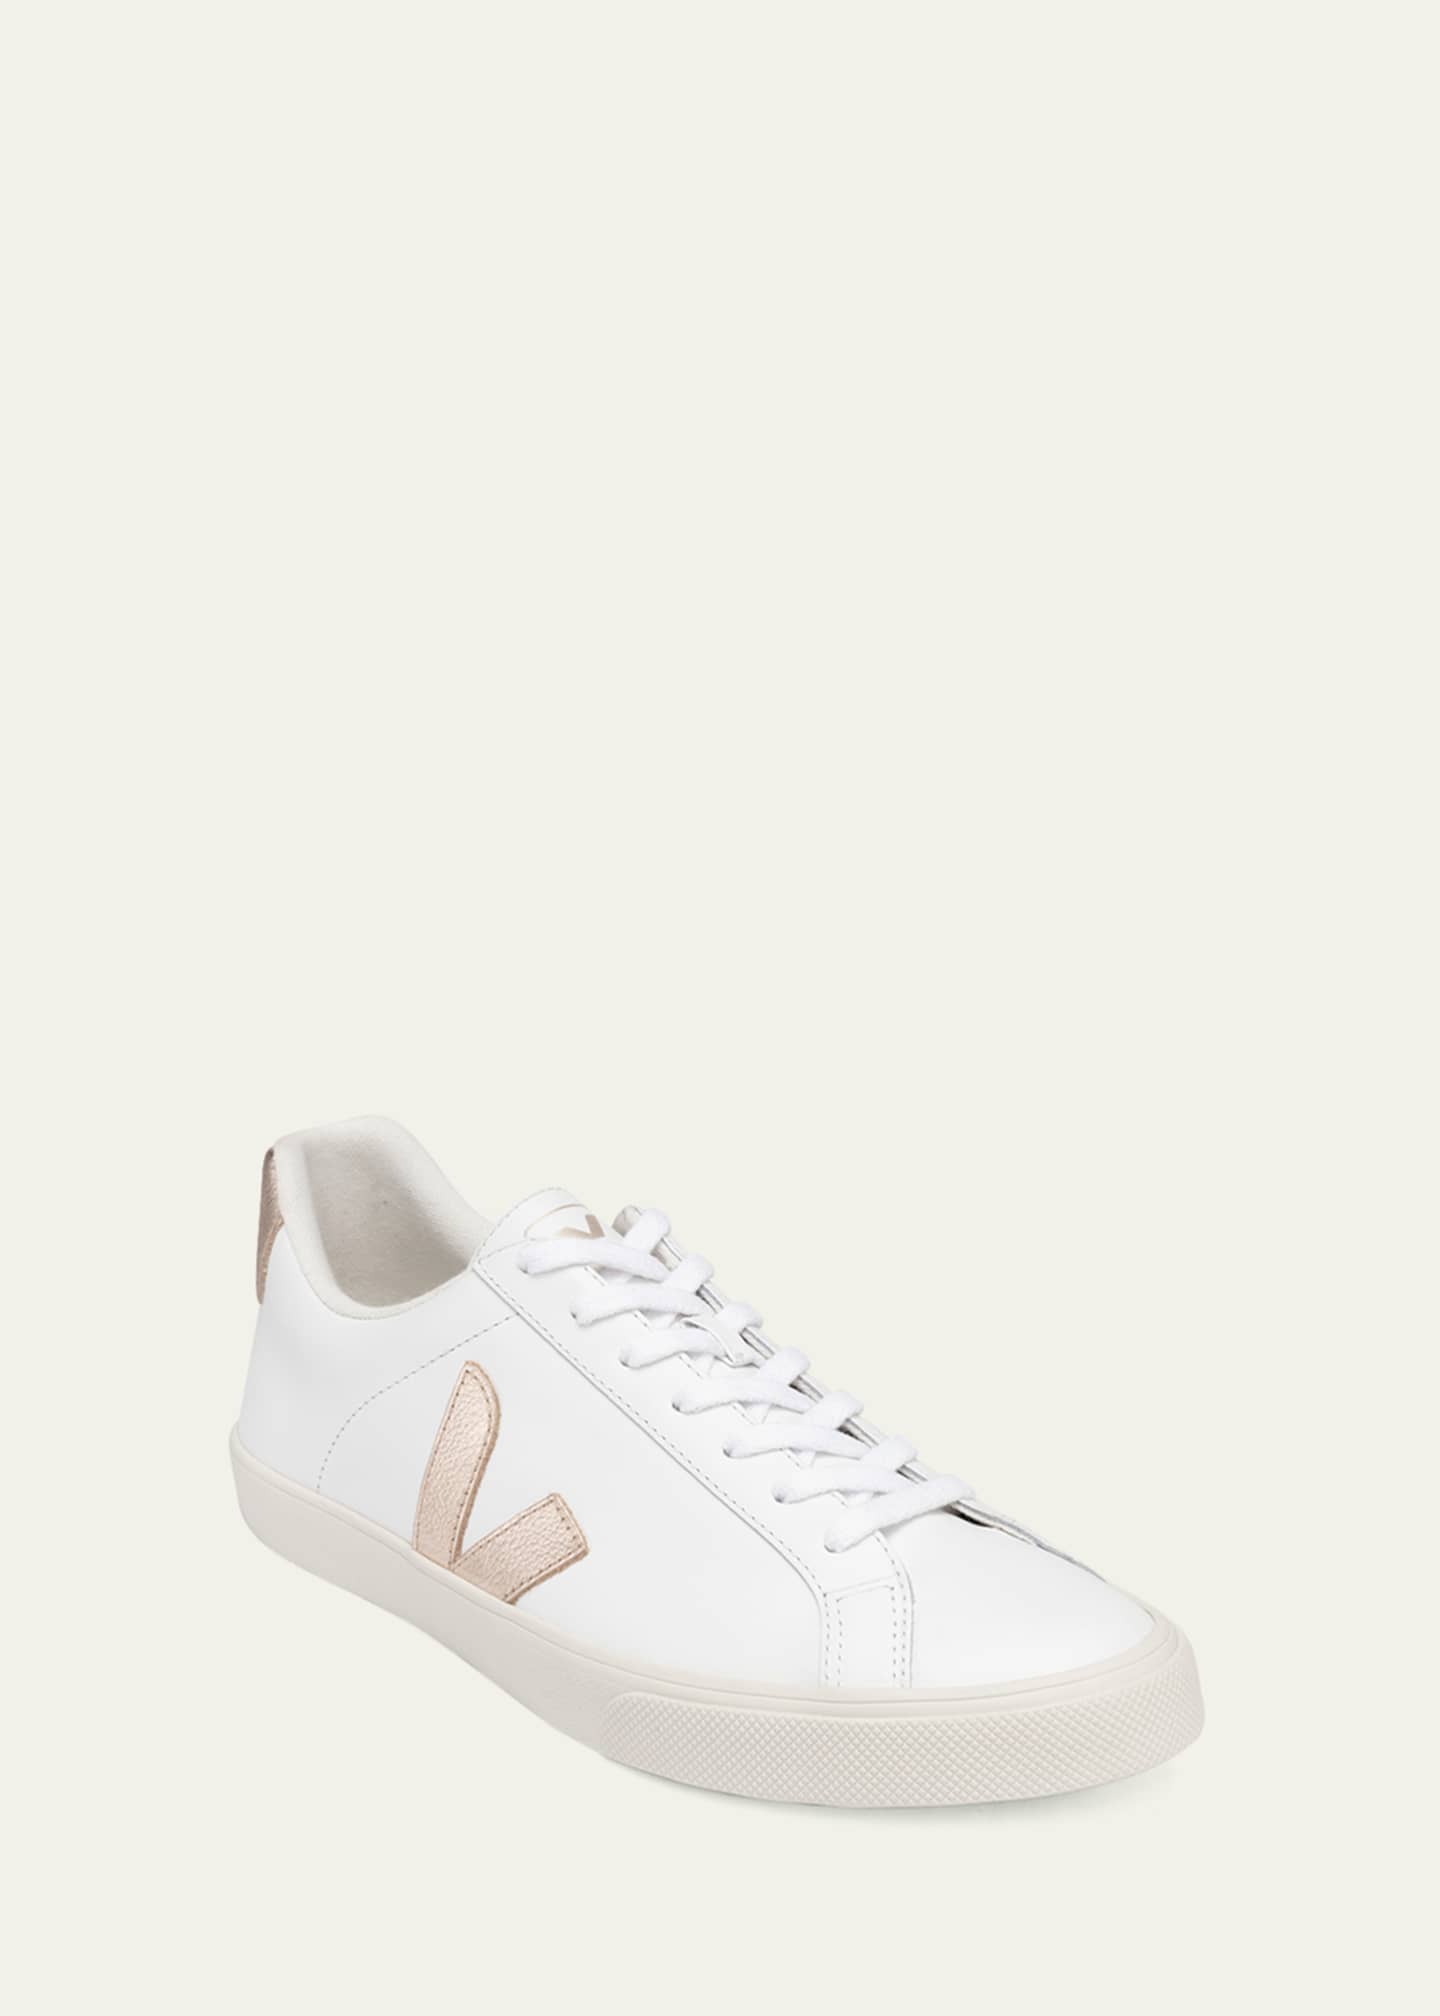 VEJA Esplar Bicolor Leather Low-Top Sneakers - Bergdorf Goodman